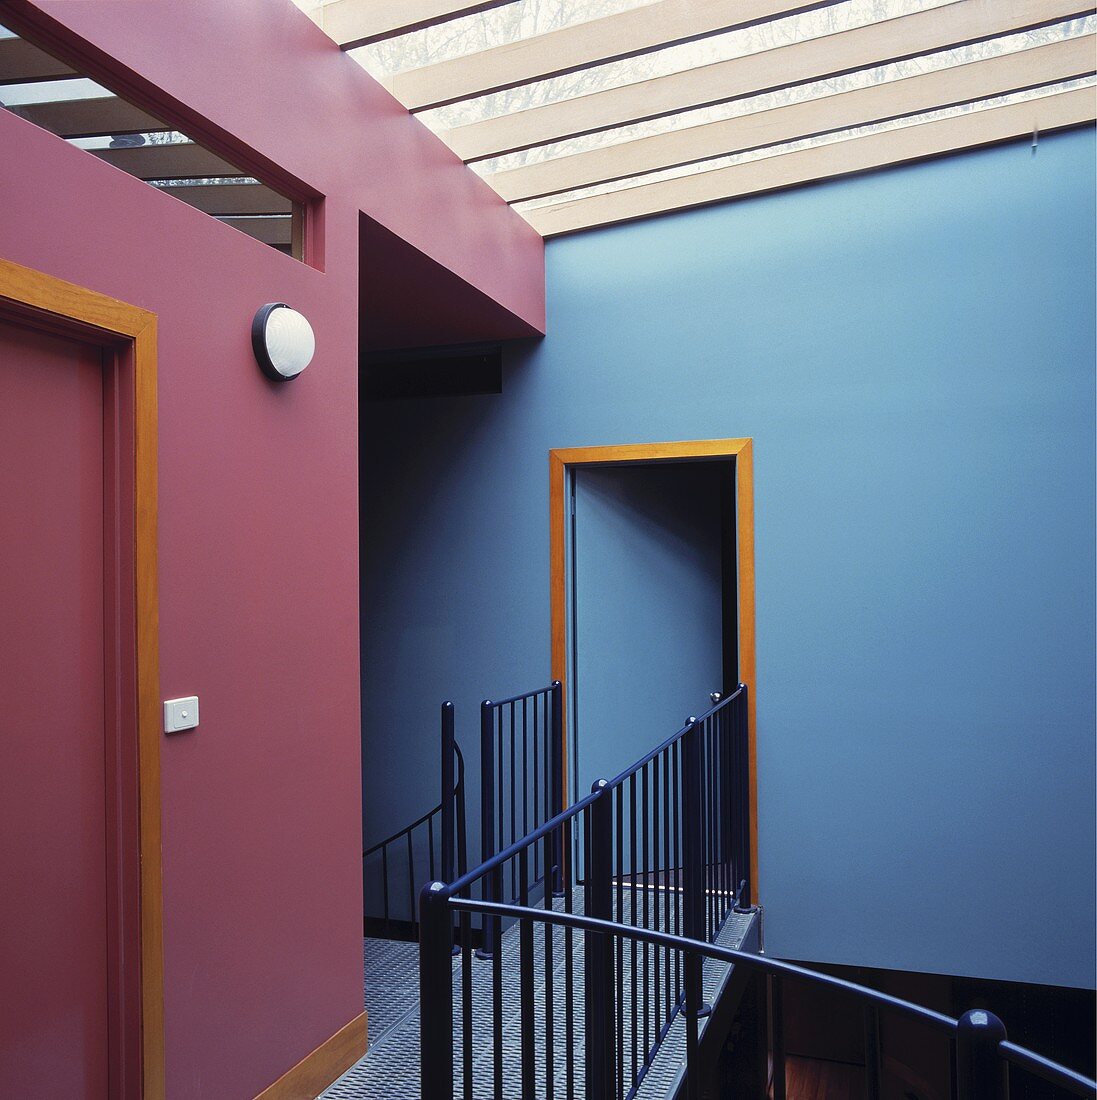 Ein moderner Stockwerkvorraum mit lila-blauen Wänden und ein schwarzes Metallgeländer